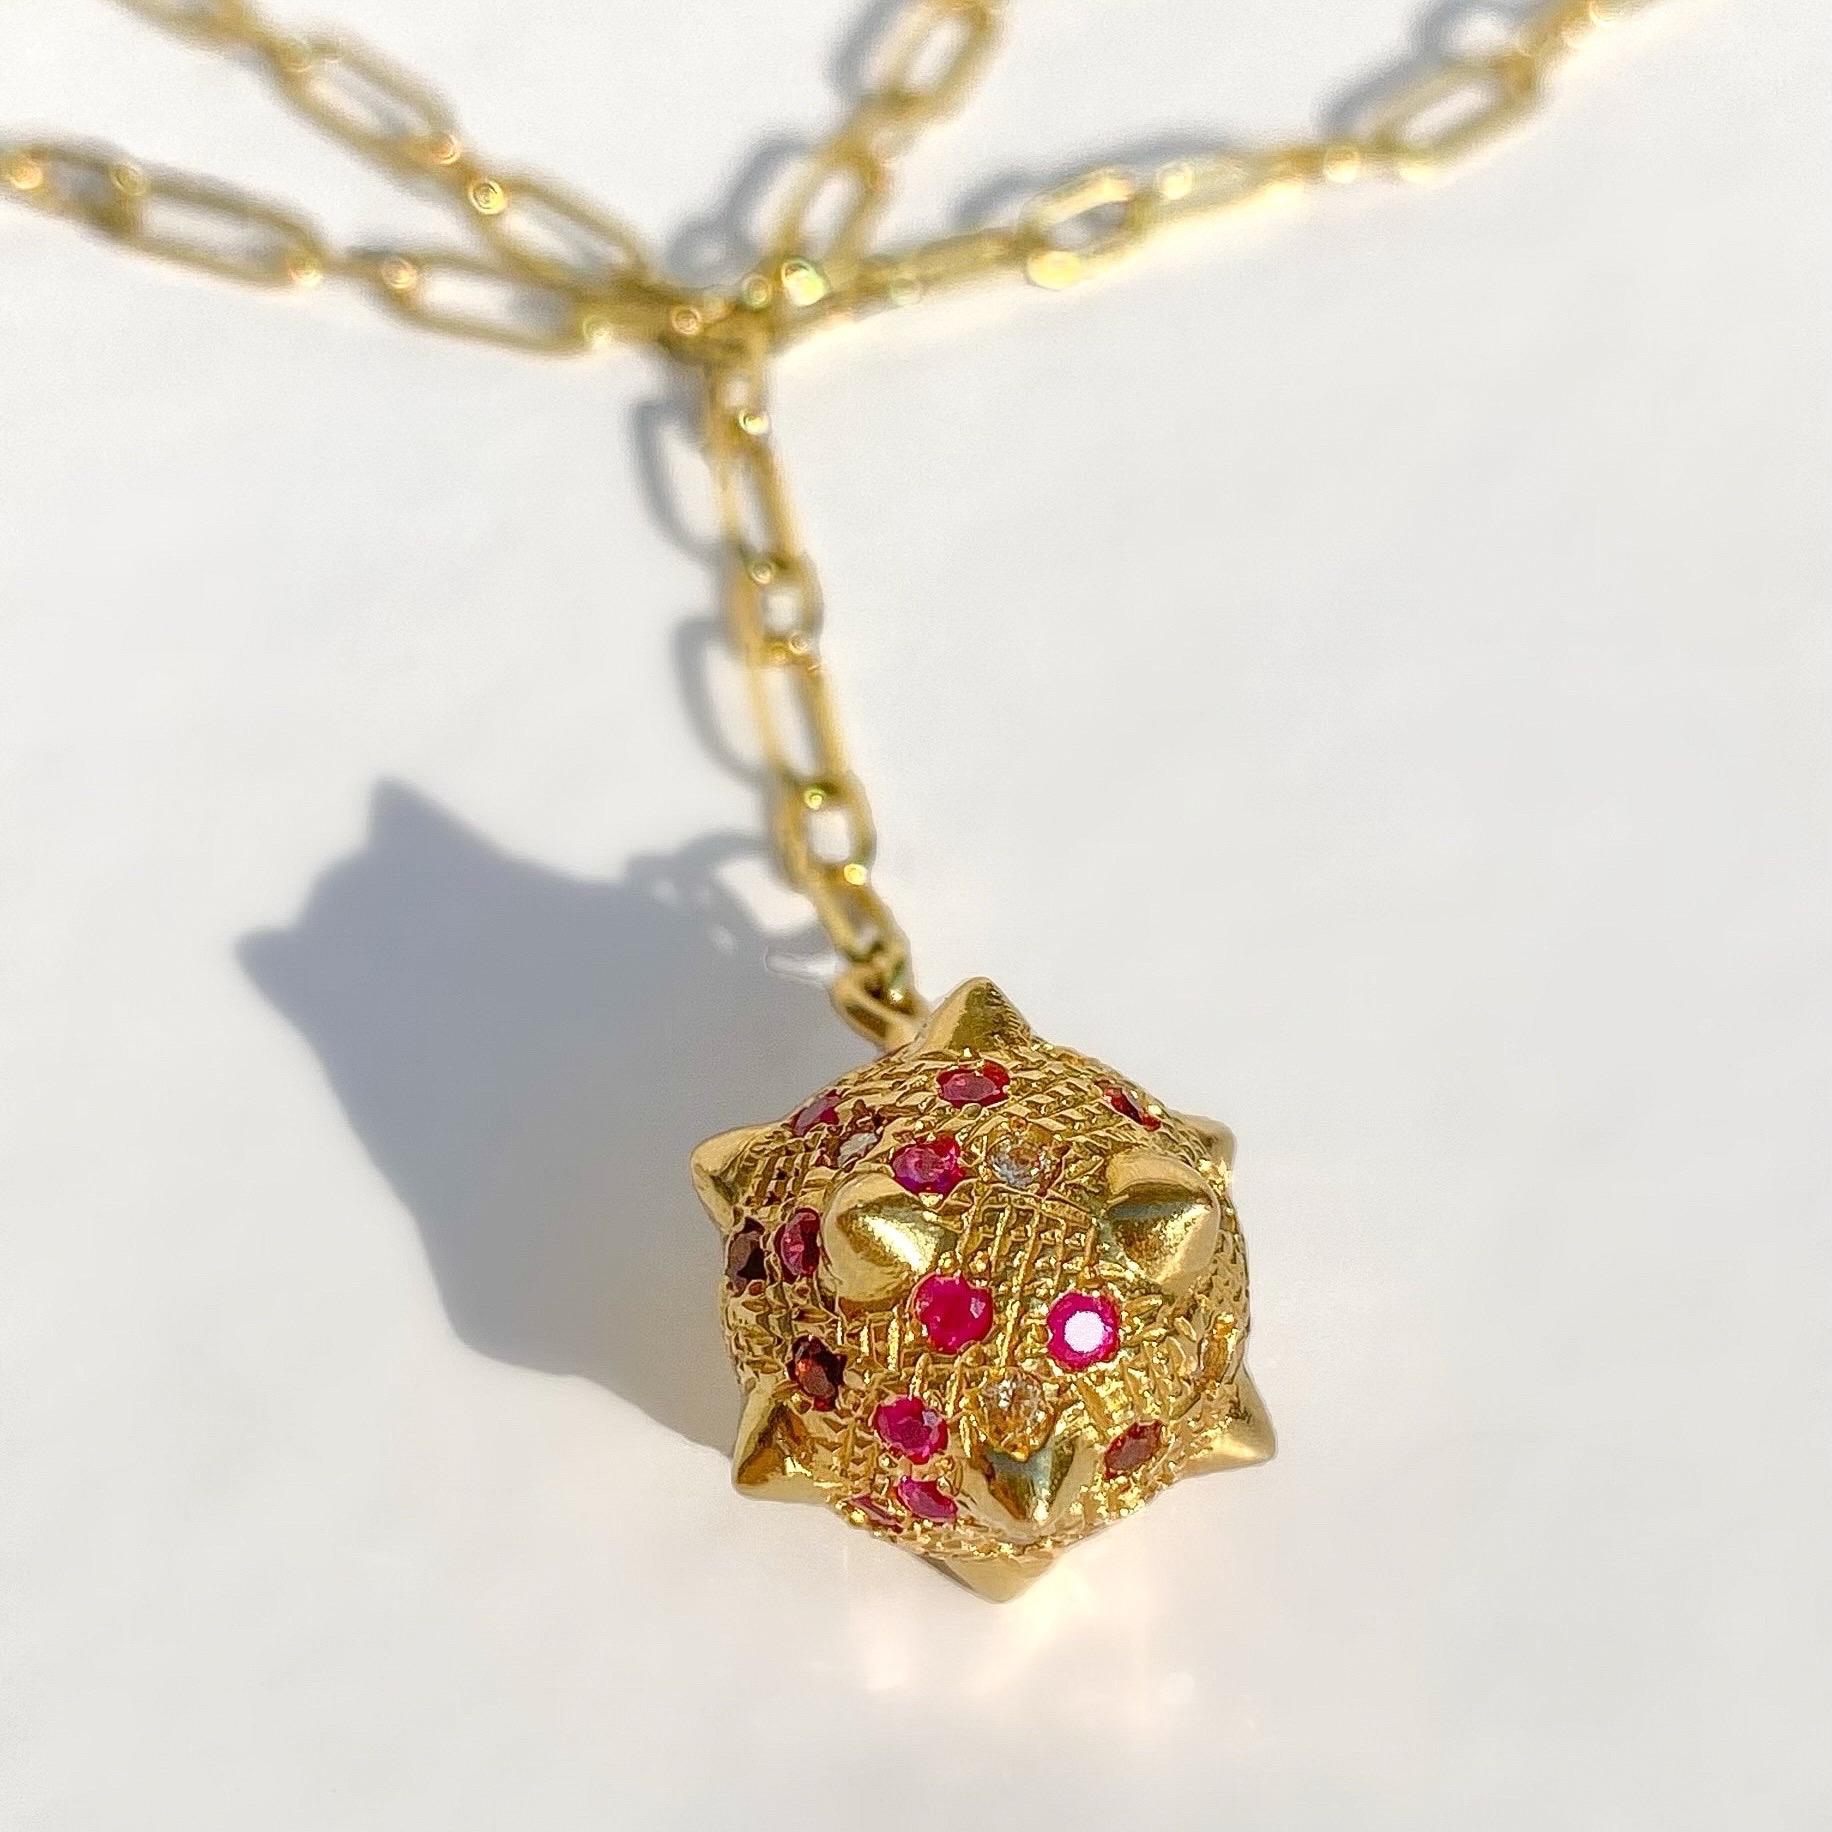 Zeitgenössische 18k Gold Spiked Sphere Kette Halskette mit Diamanten, Rubinen Granaten für Damen oder Herren im Angebot